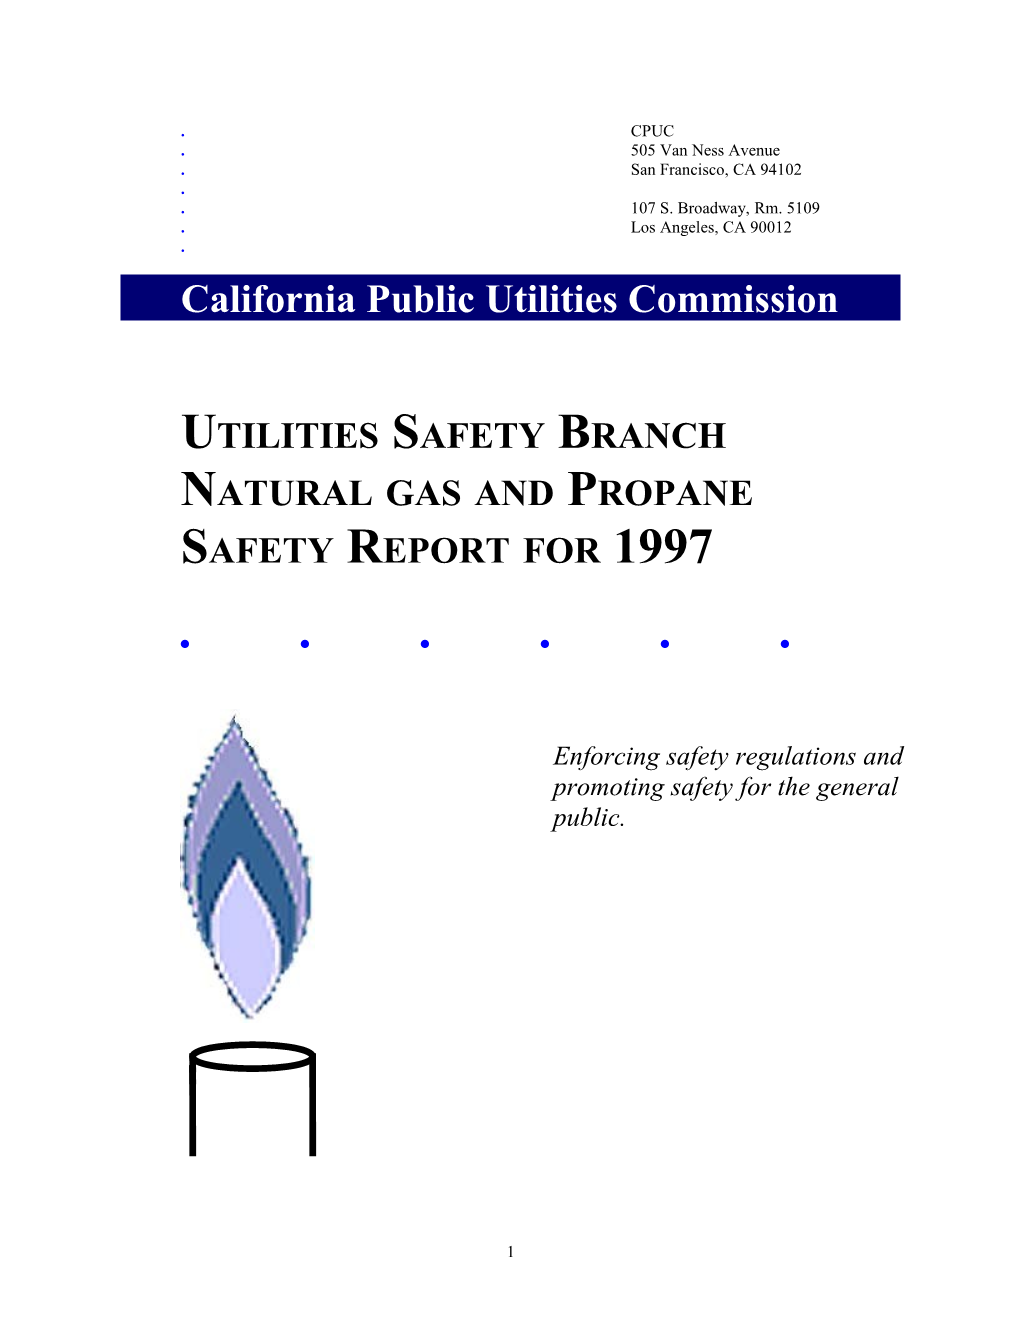 California Public Utilities Commission s2